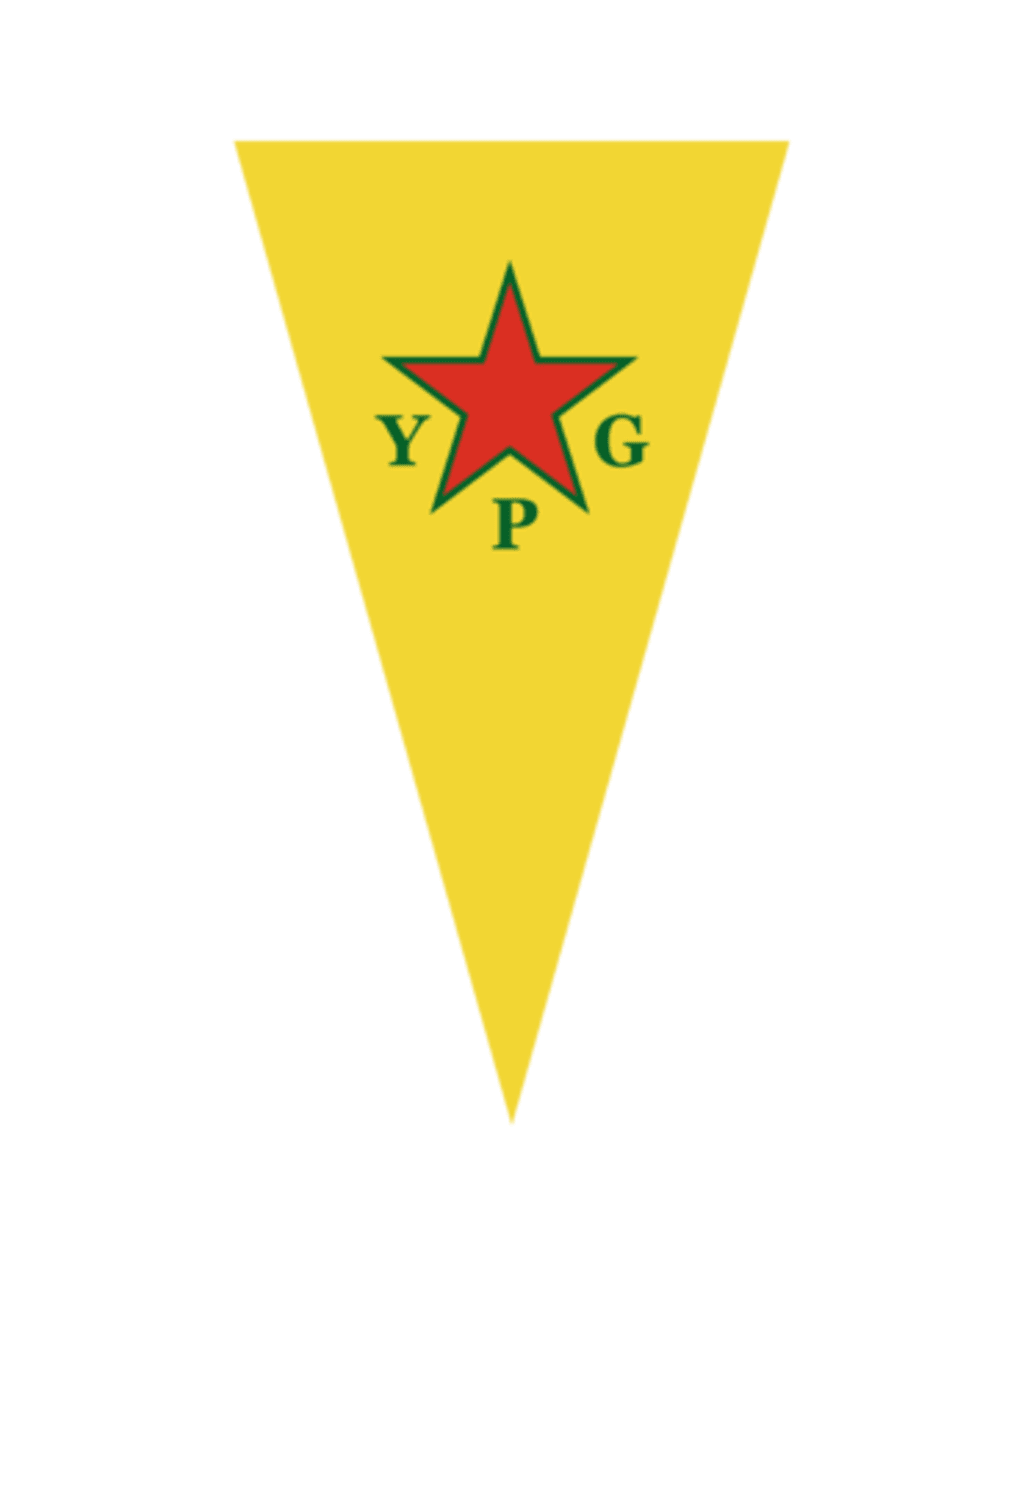 YPG - Unità di Protezione Popolare